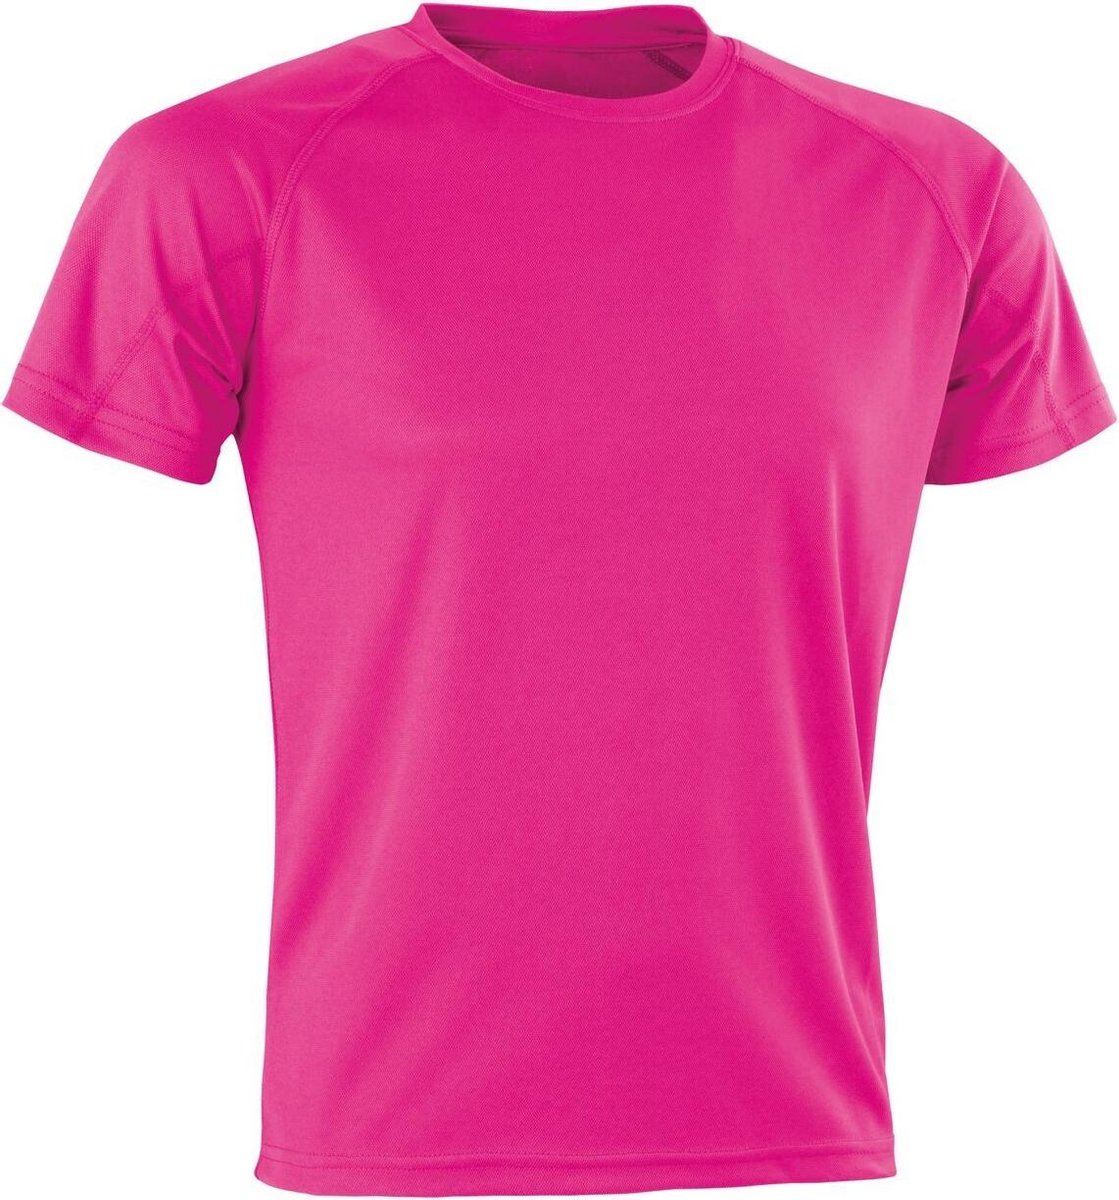 Spiro Heren Aircool T-Shirt (Flo Roze)